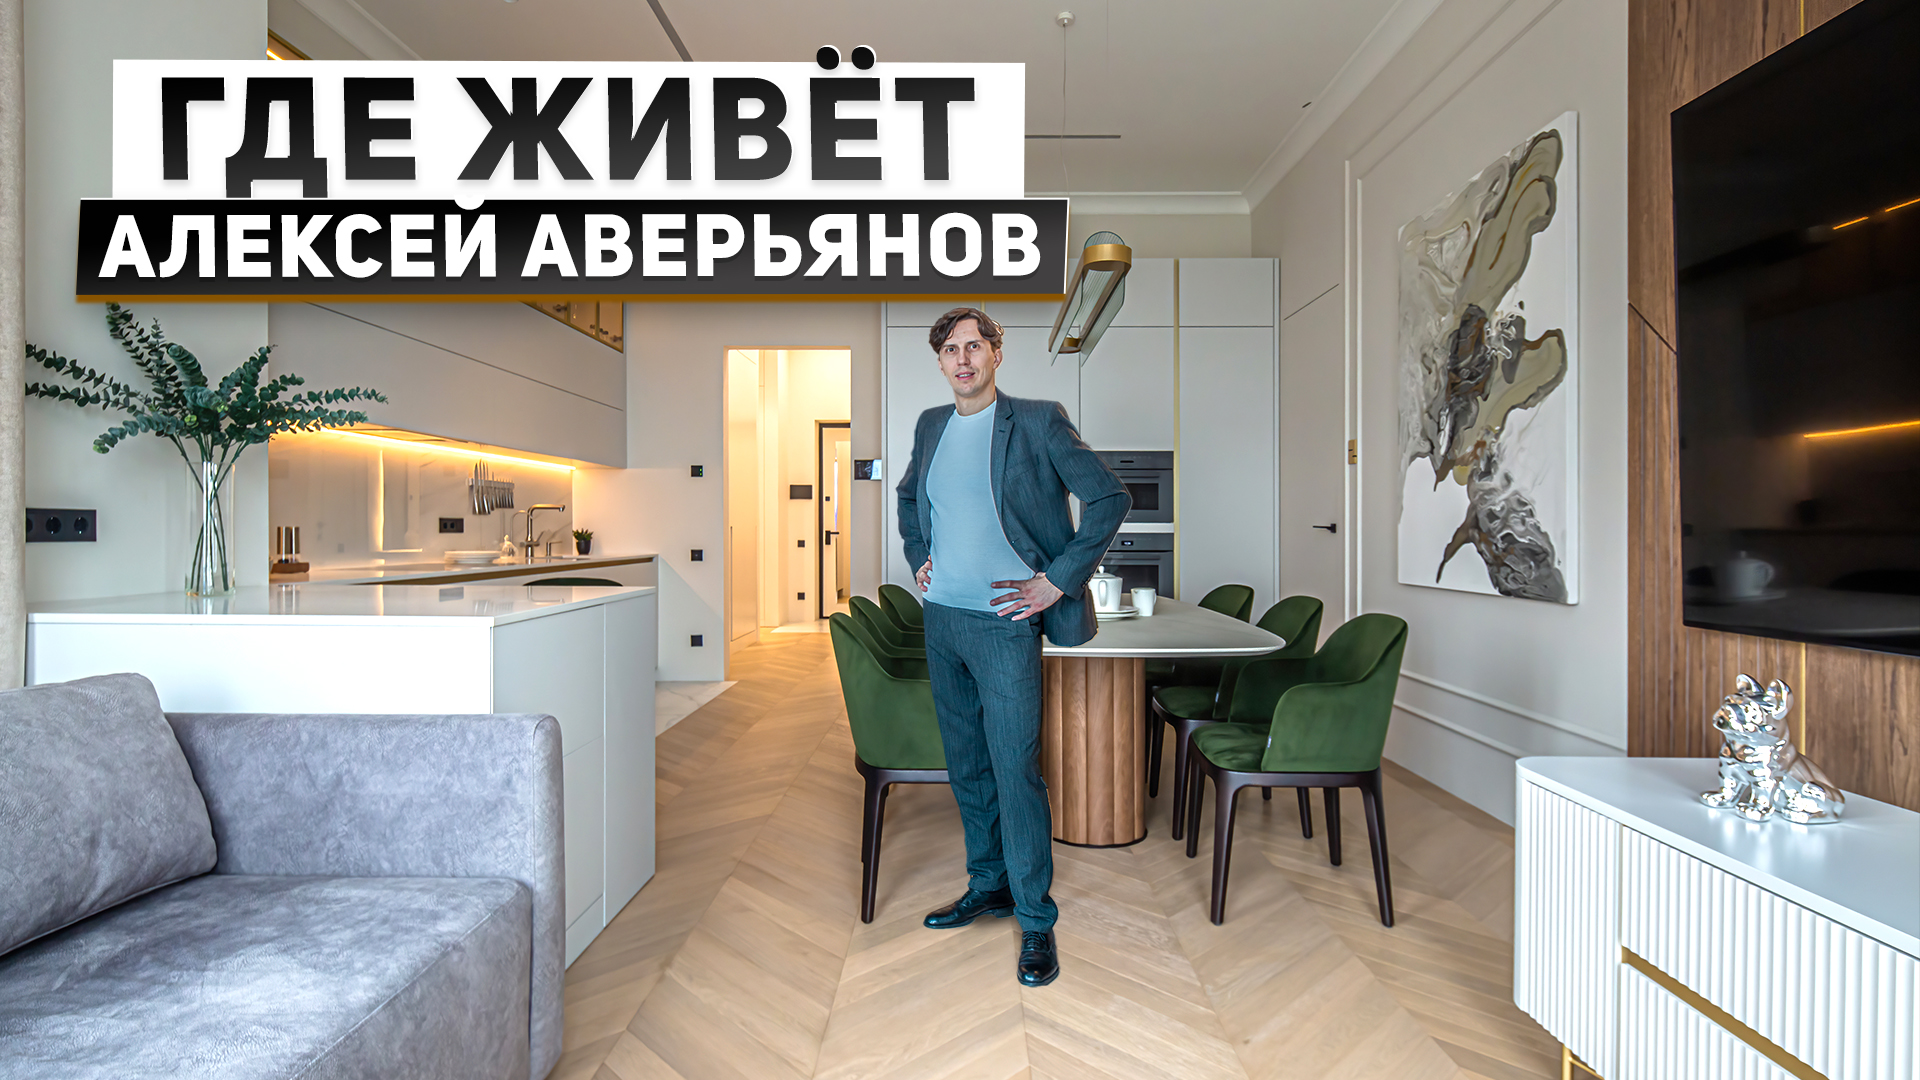 Где живет блогер по элитной недвижимости? Обзор квартиры Алексея Аверьянова